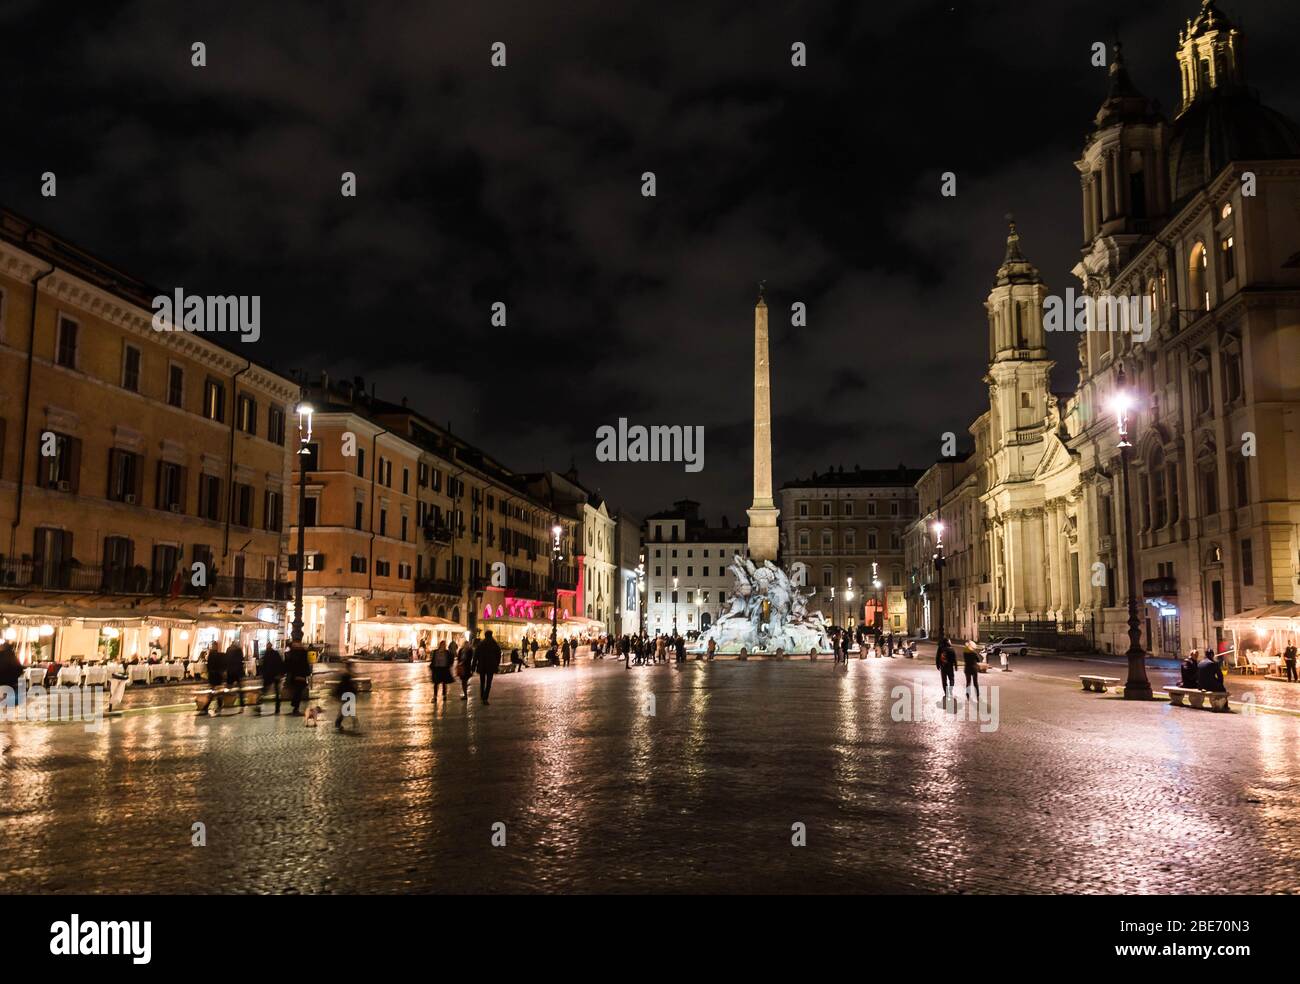 Vue de nuit sur la Piazza Navona, Rome, Italie Banque D'Images